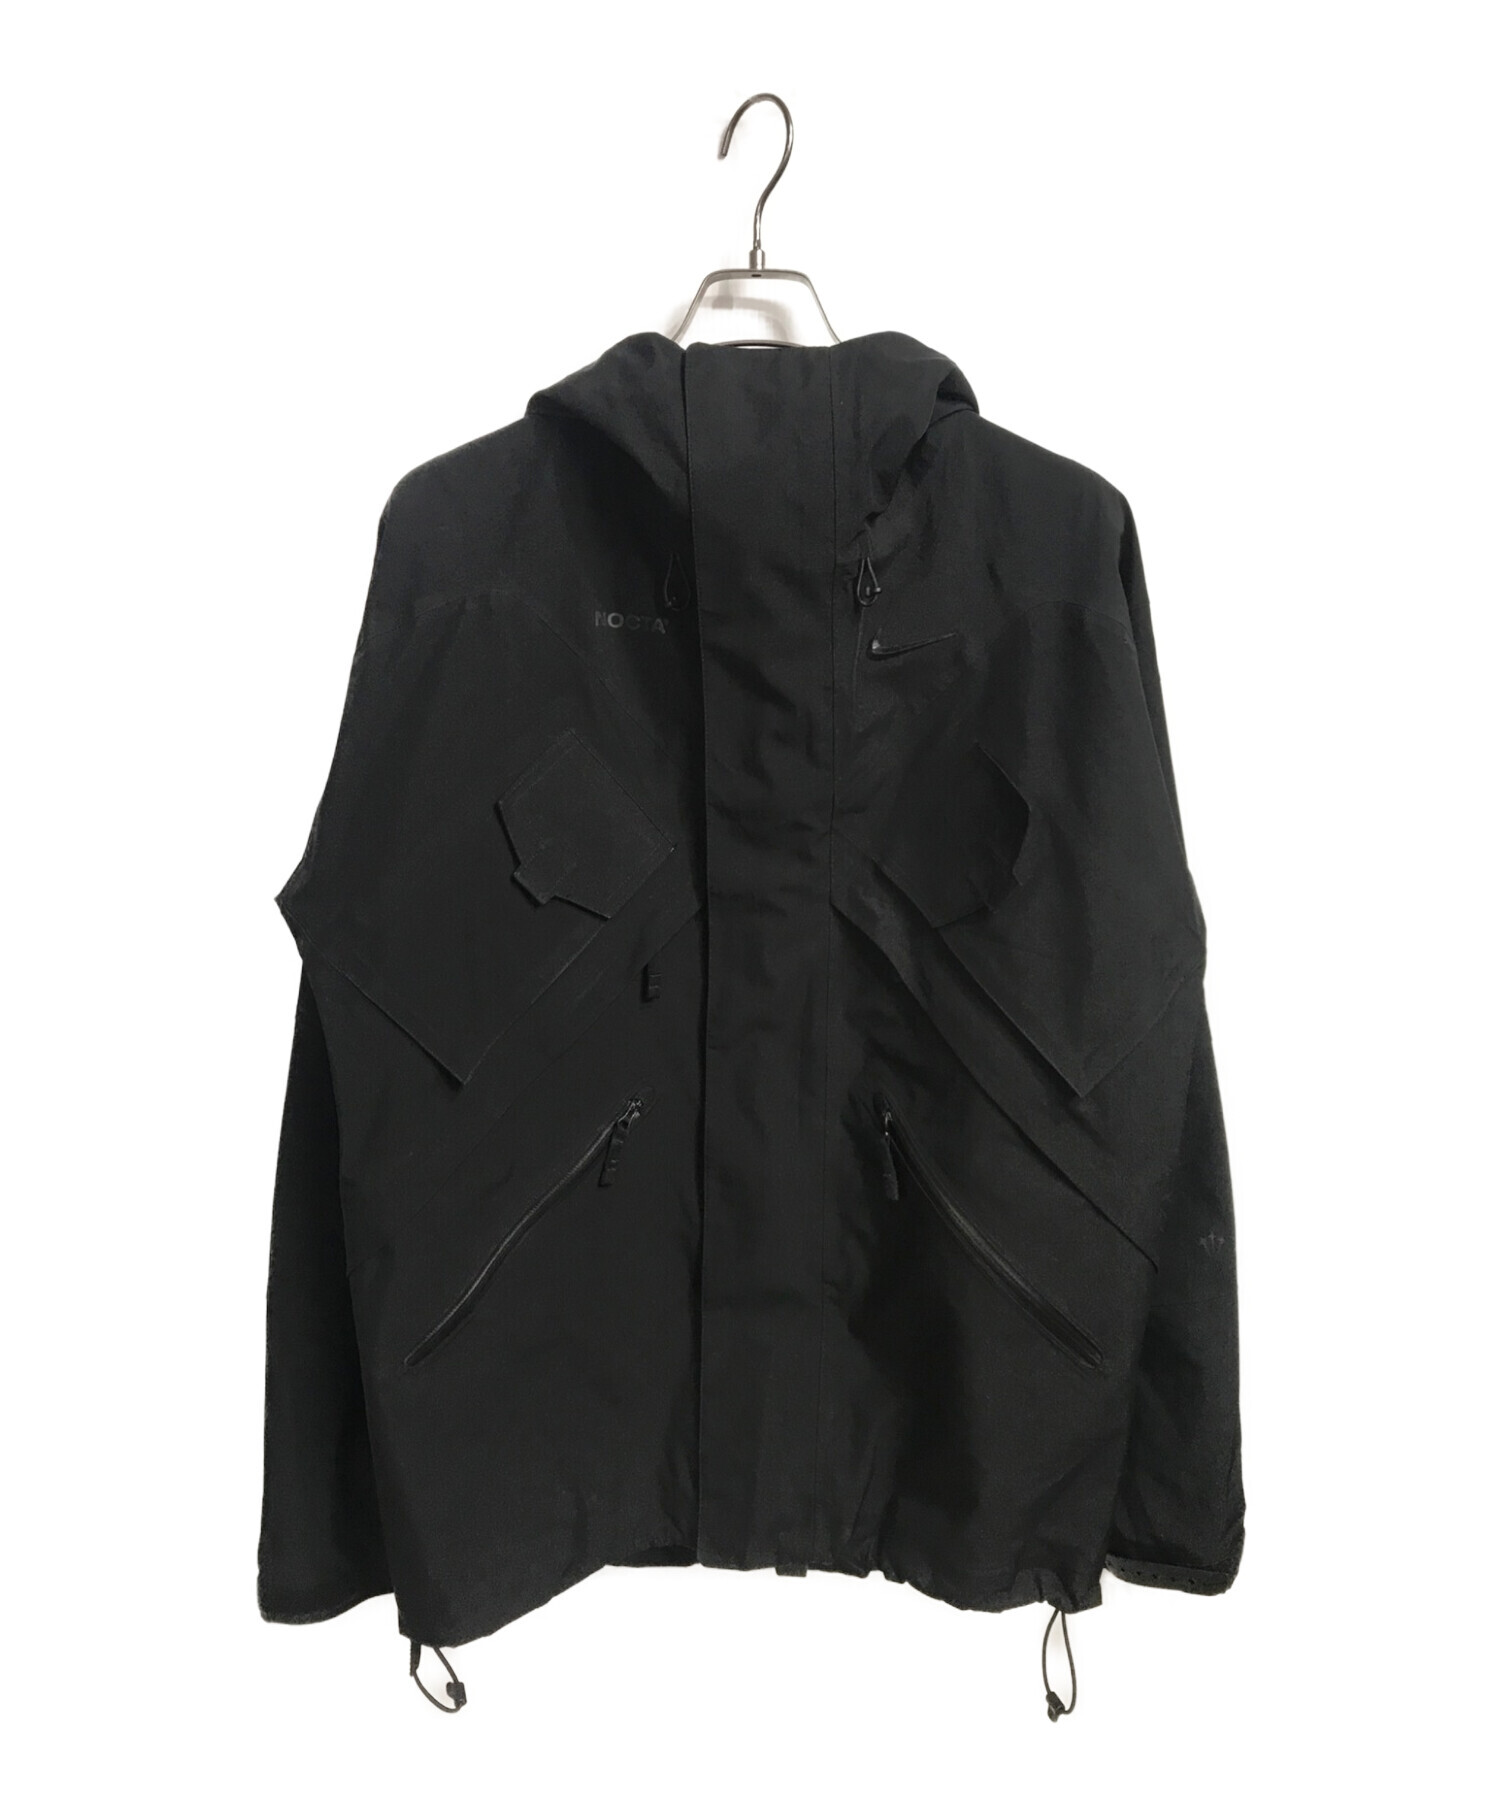 NIKE (ナイキ) NOCTA (ノクタ) テックジャケット ブラック サイズ:M